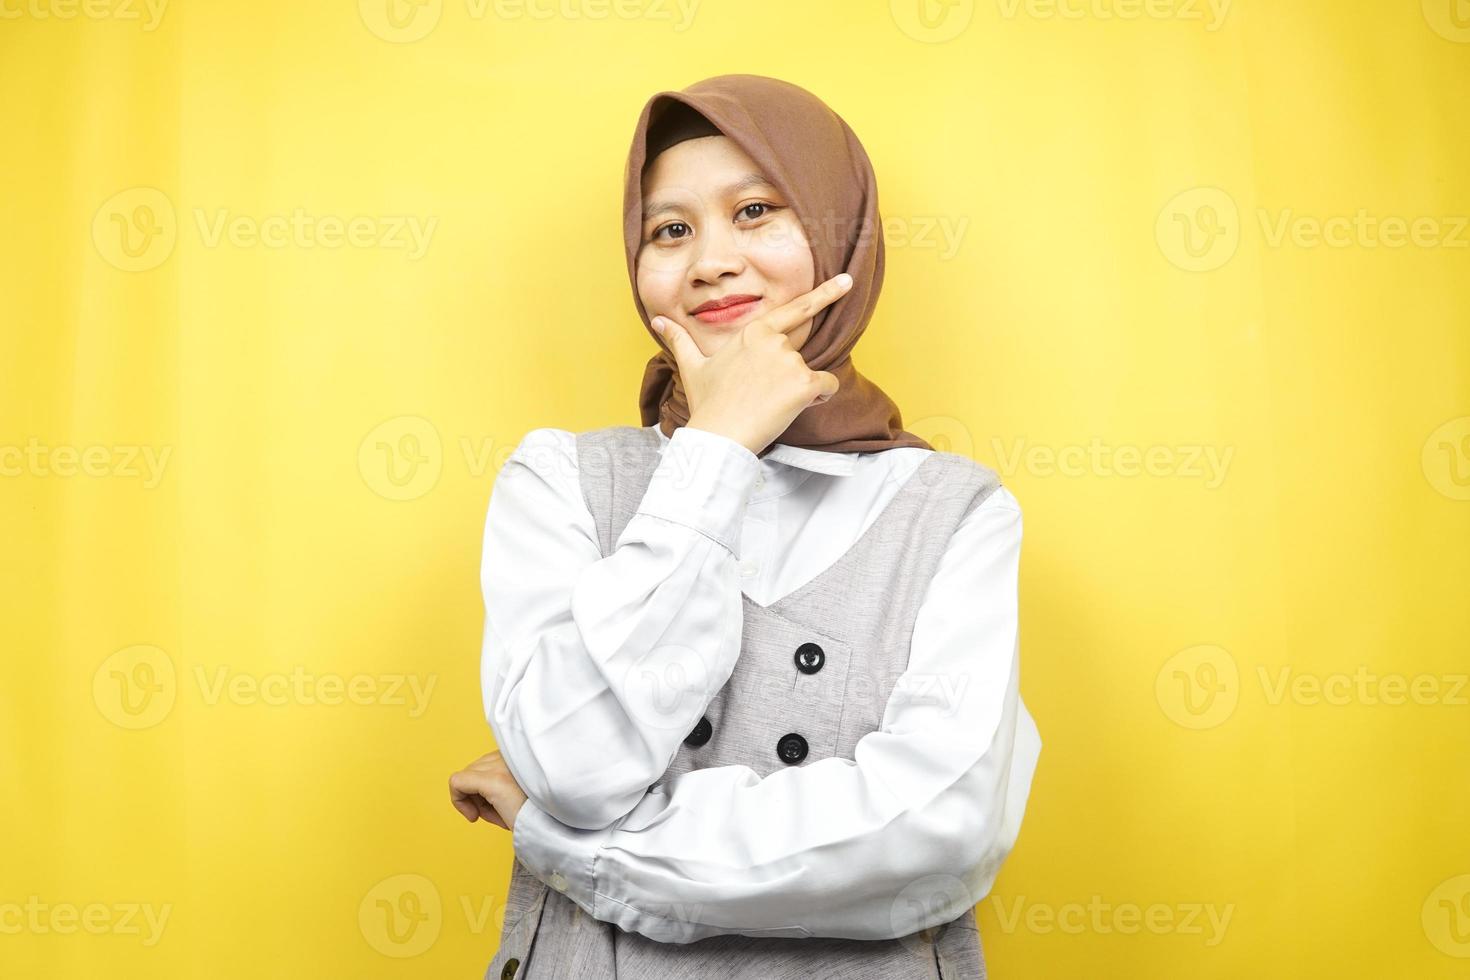 schöne junge asiatische muslimische frau, die selbstbewusst, enthusiastisch und fröhlich lächelt, mit den händen v zeichen am kinn einzeln auf gelbem hintergrund foto